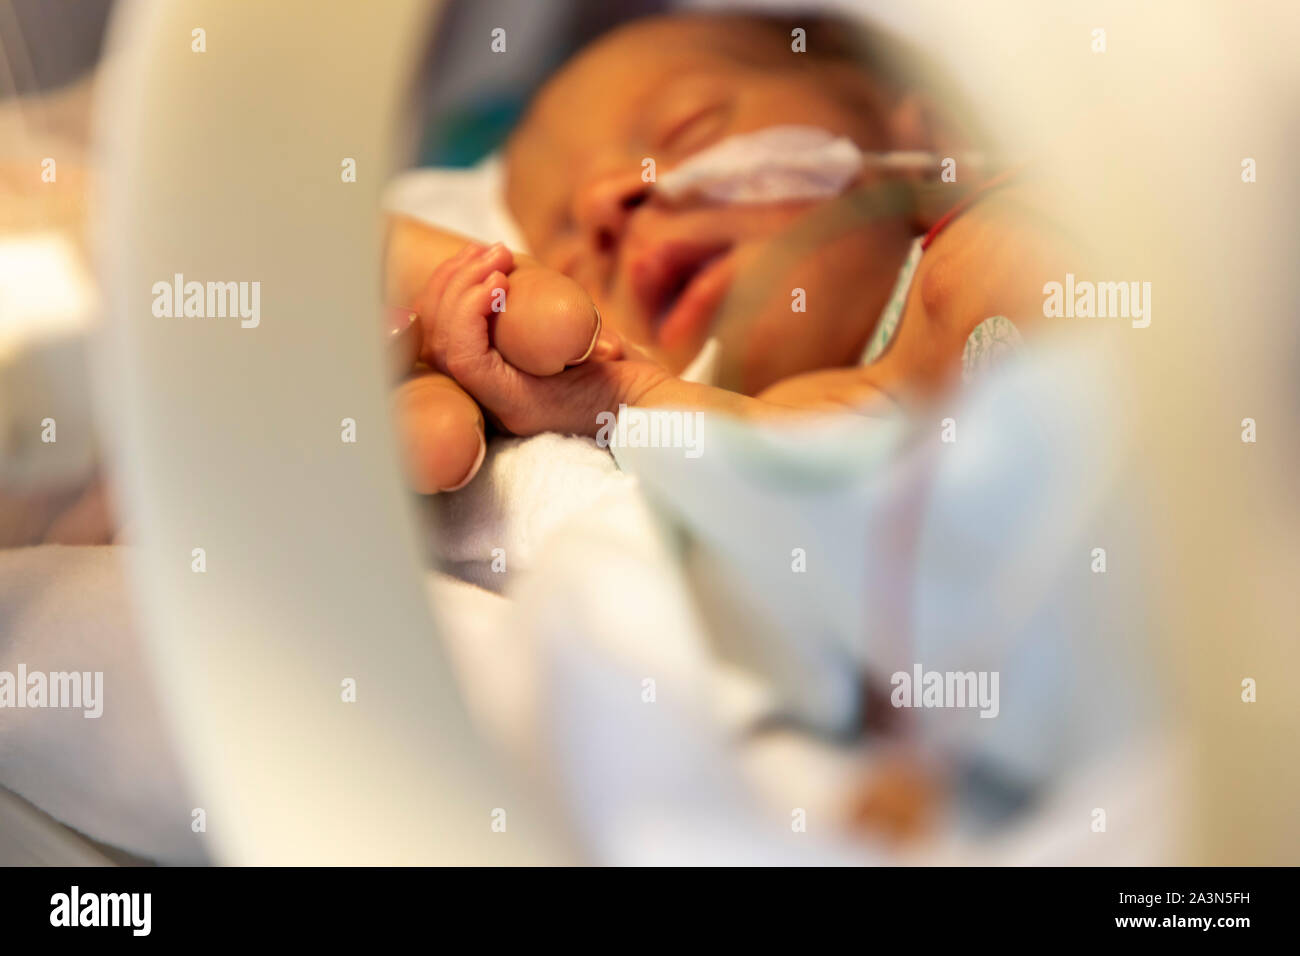 Nascita prematura ward in un ospedale, un reparto di neonatologia, neonati prematuri in un incubatore, mano della madre, Foto Stock